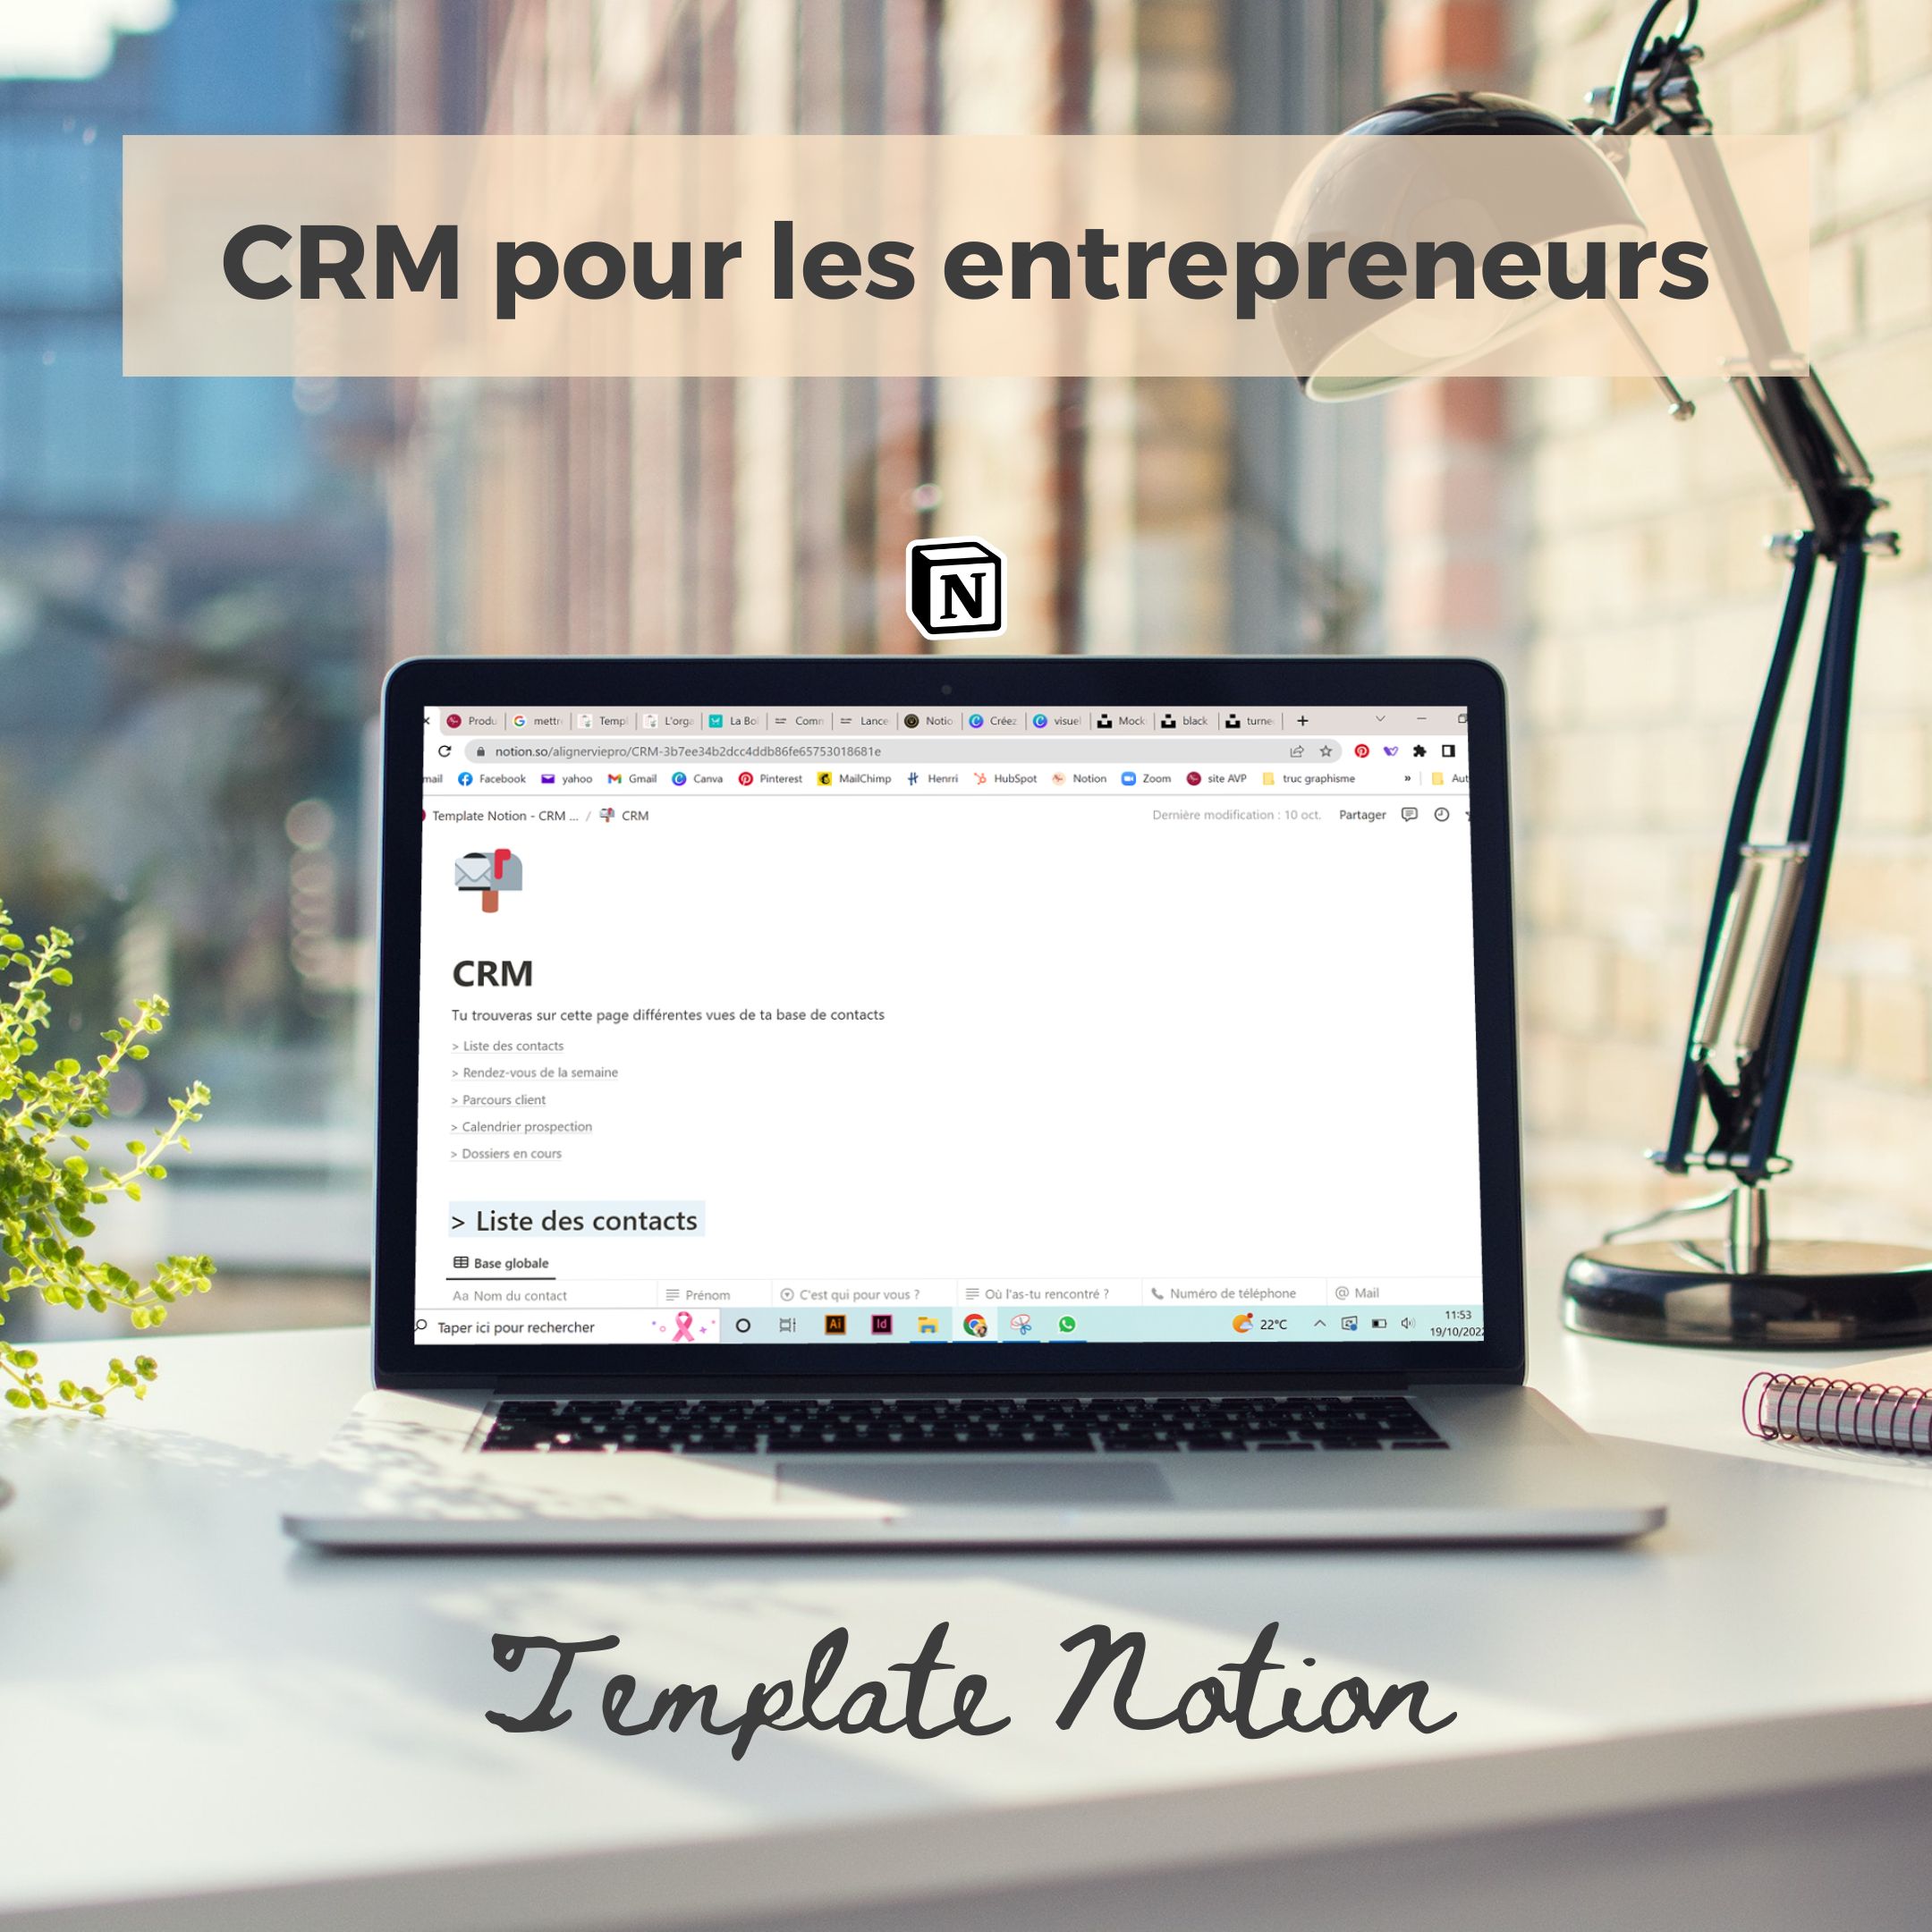 CRM Notion créé pour les entrepreneurs